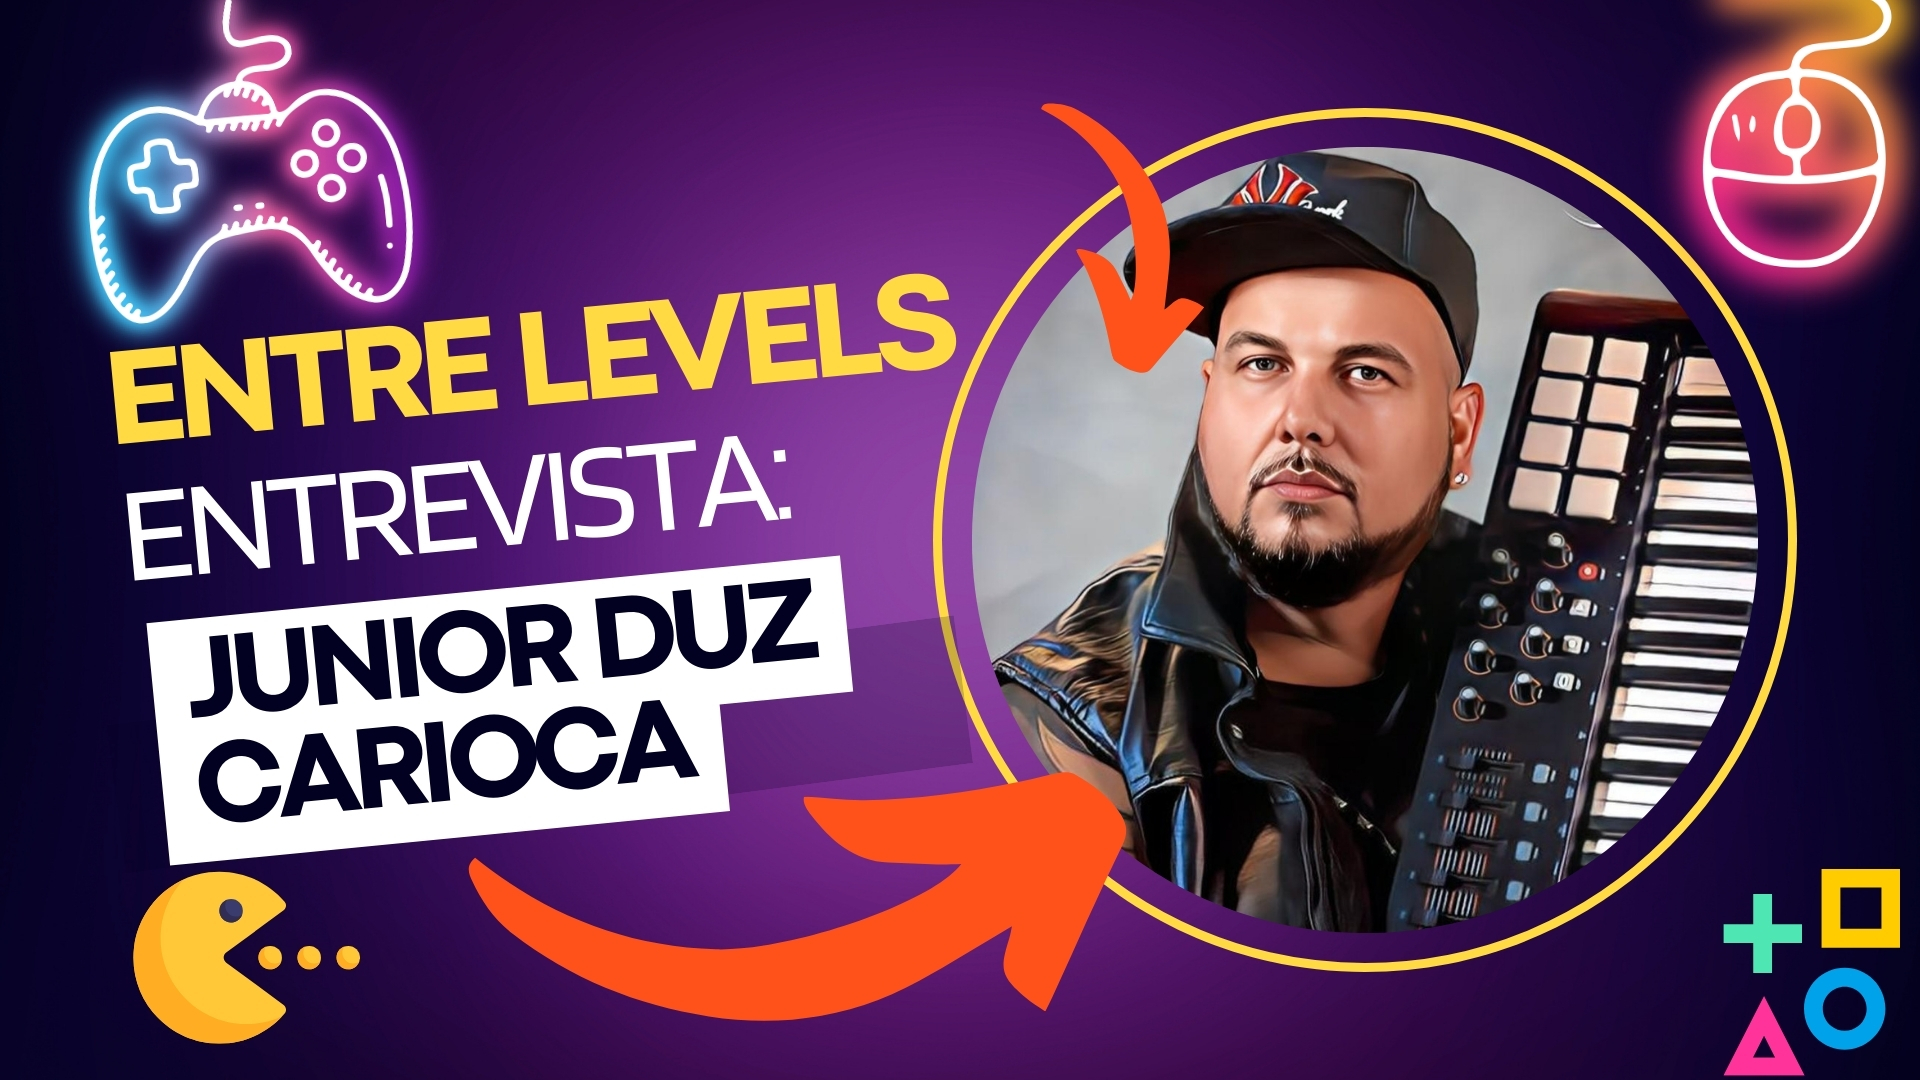 Programa Entre Levels entrevista: Junior Duz Carioca